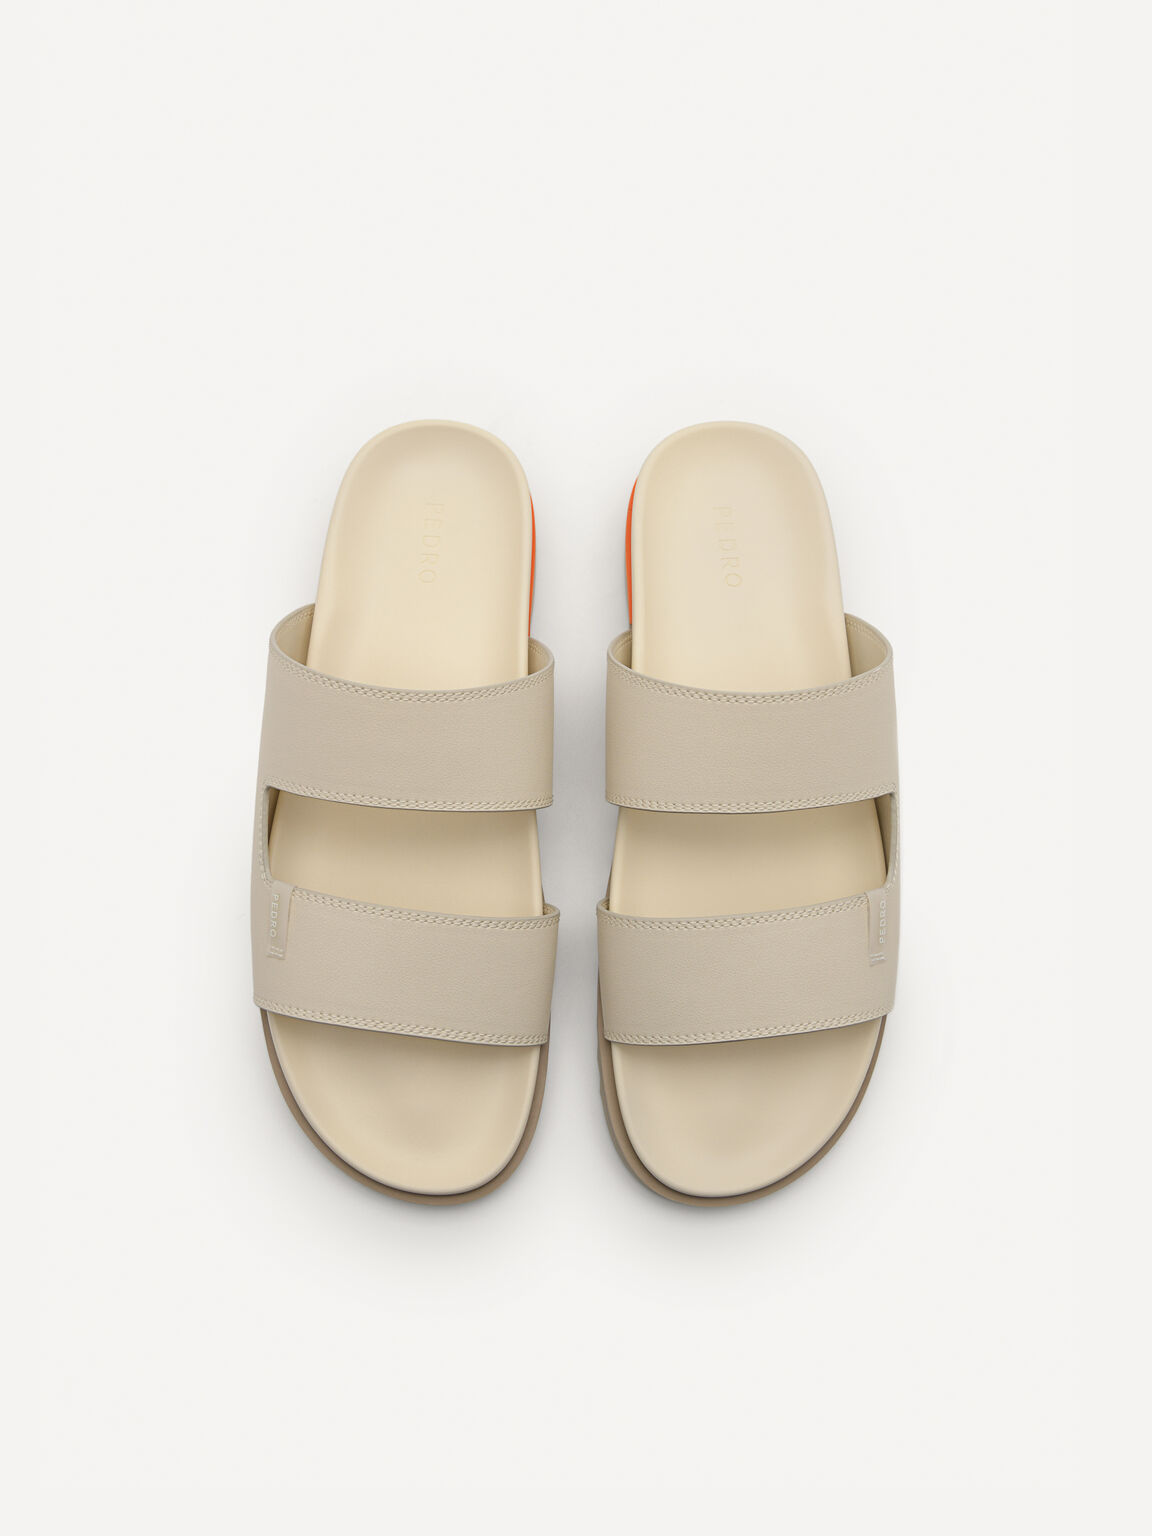 Owen Slide Sandals, Beige